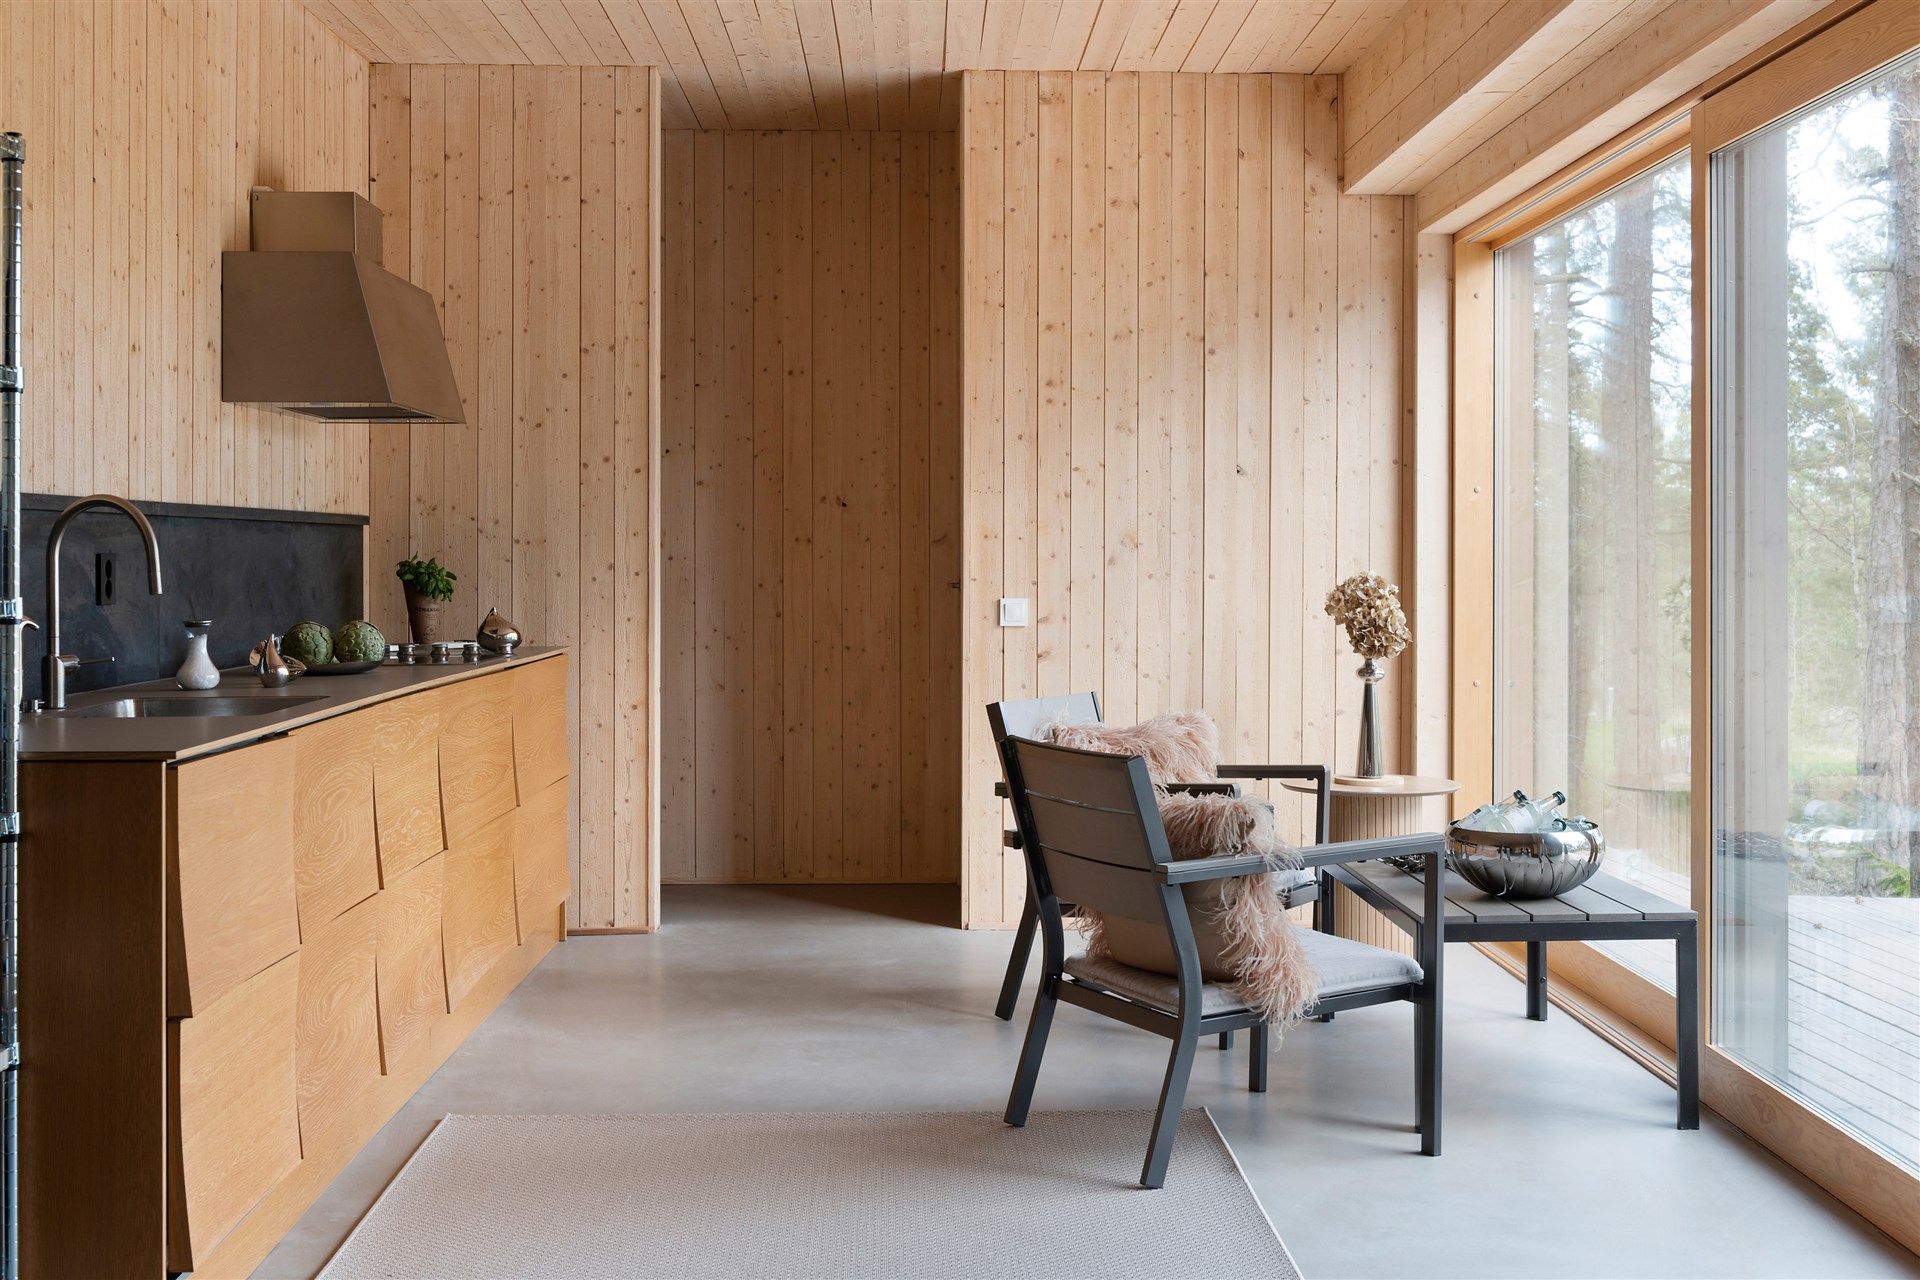 cuisine maison en bois décoration design